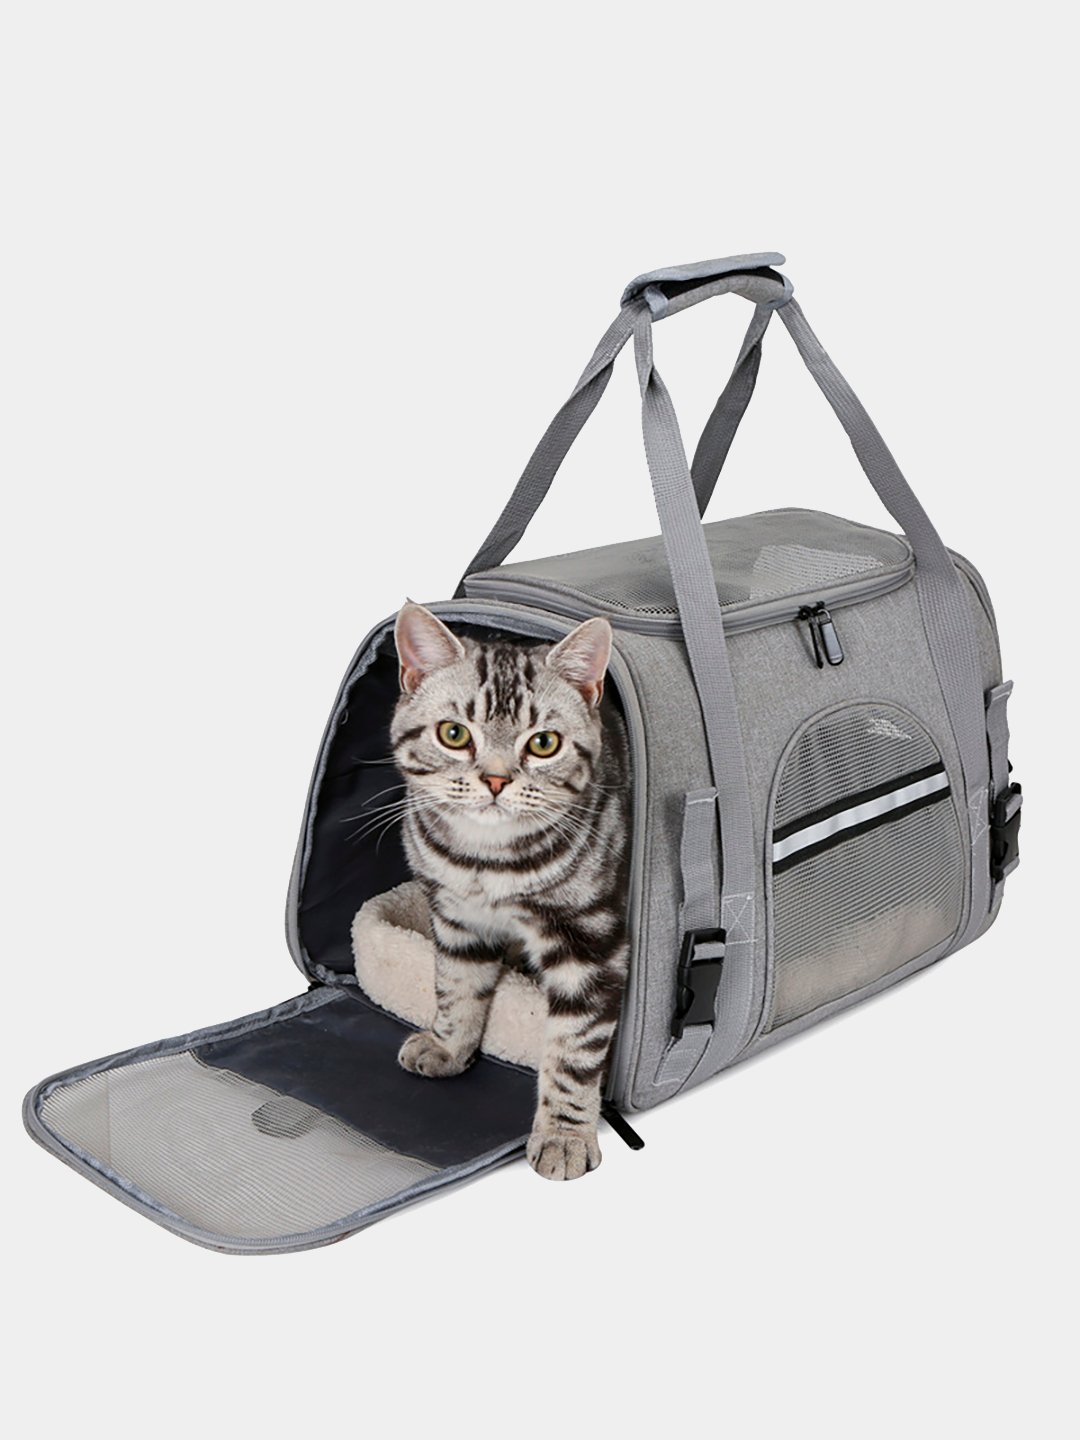 Переноски и сумки для кошек